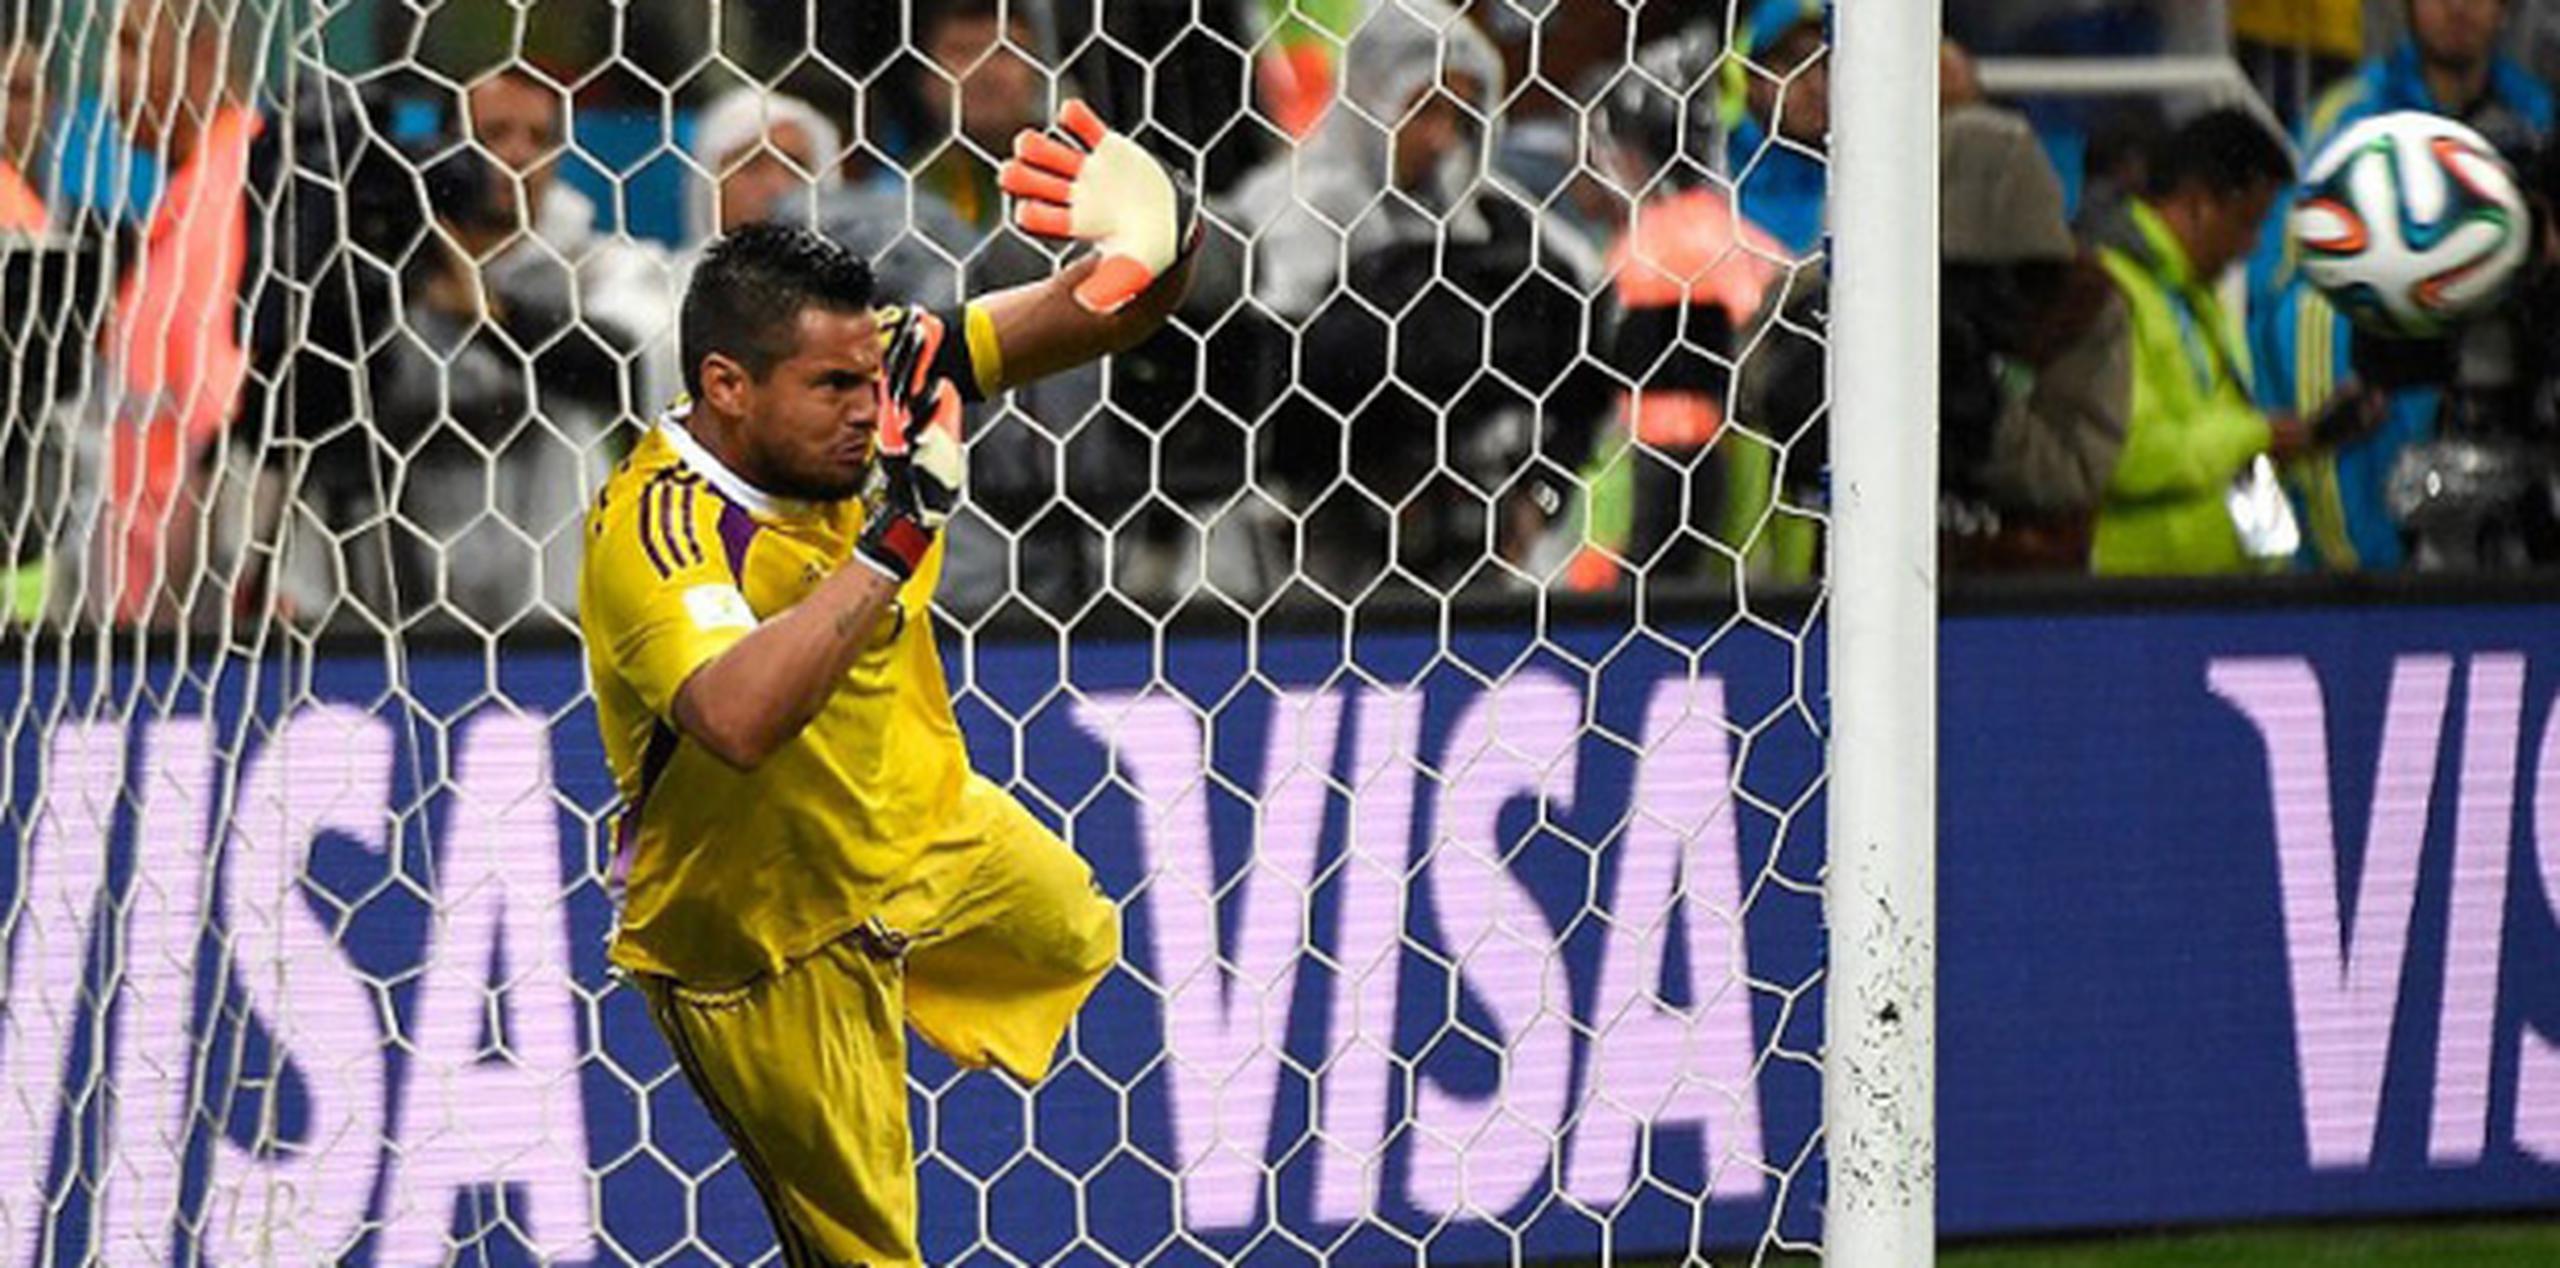 El portero del equipo de Argentina, Sergio Romero, bloque ael balón durante la tanda de penales contra Holanda en la Copa Mundial 2014 en Brasil. (AFP)